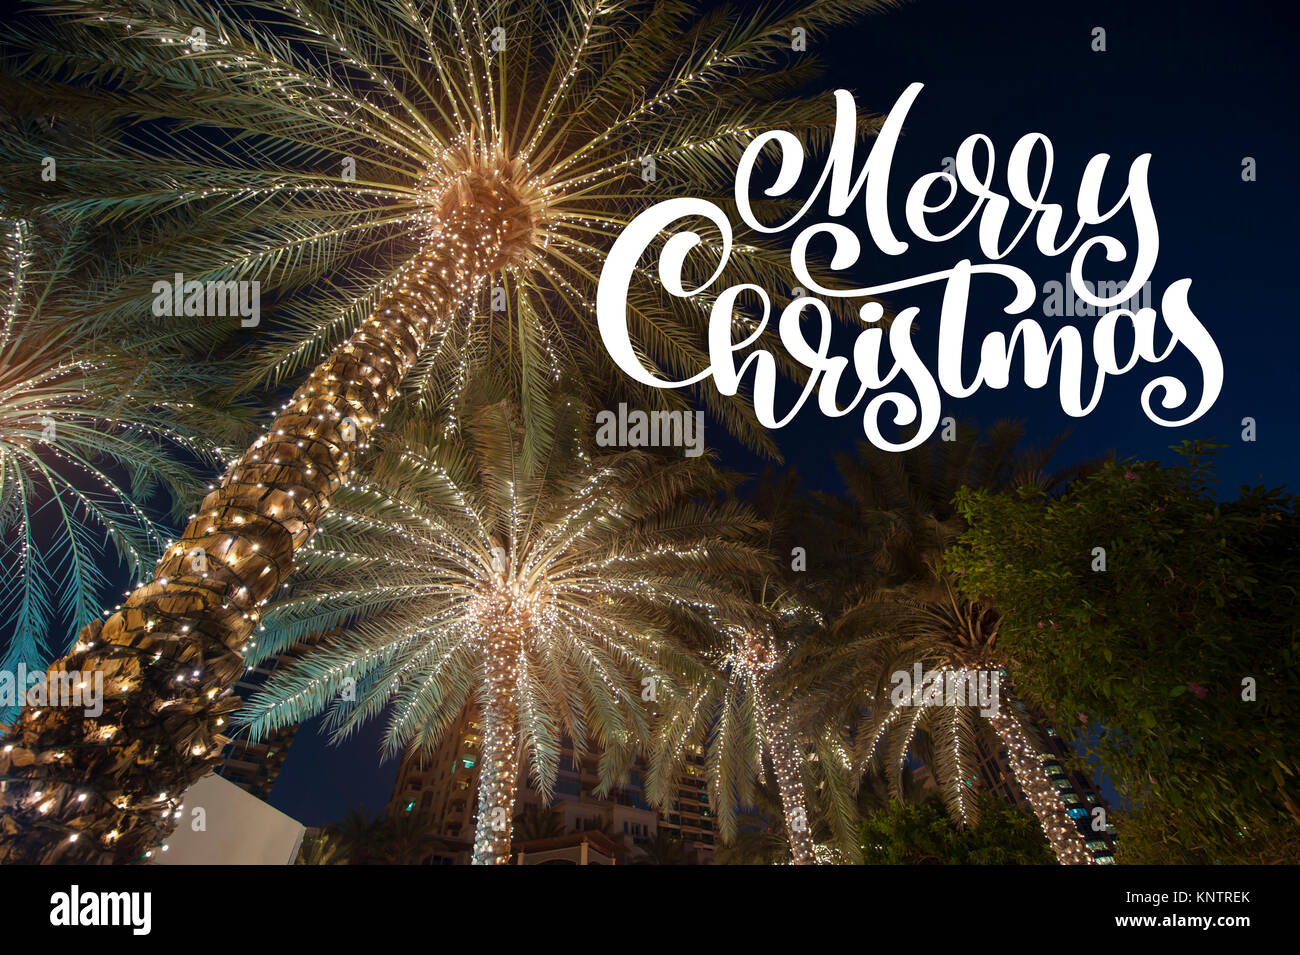 Noël arrière-plan palmier dans la ville nocturne avec recouvrement de photos Joyeux noël, cartes de vœux Banque D'Images